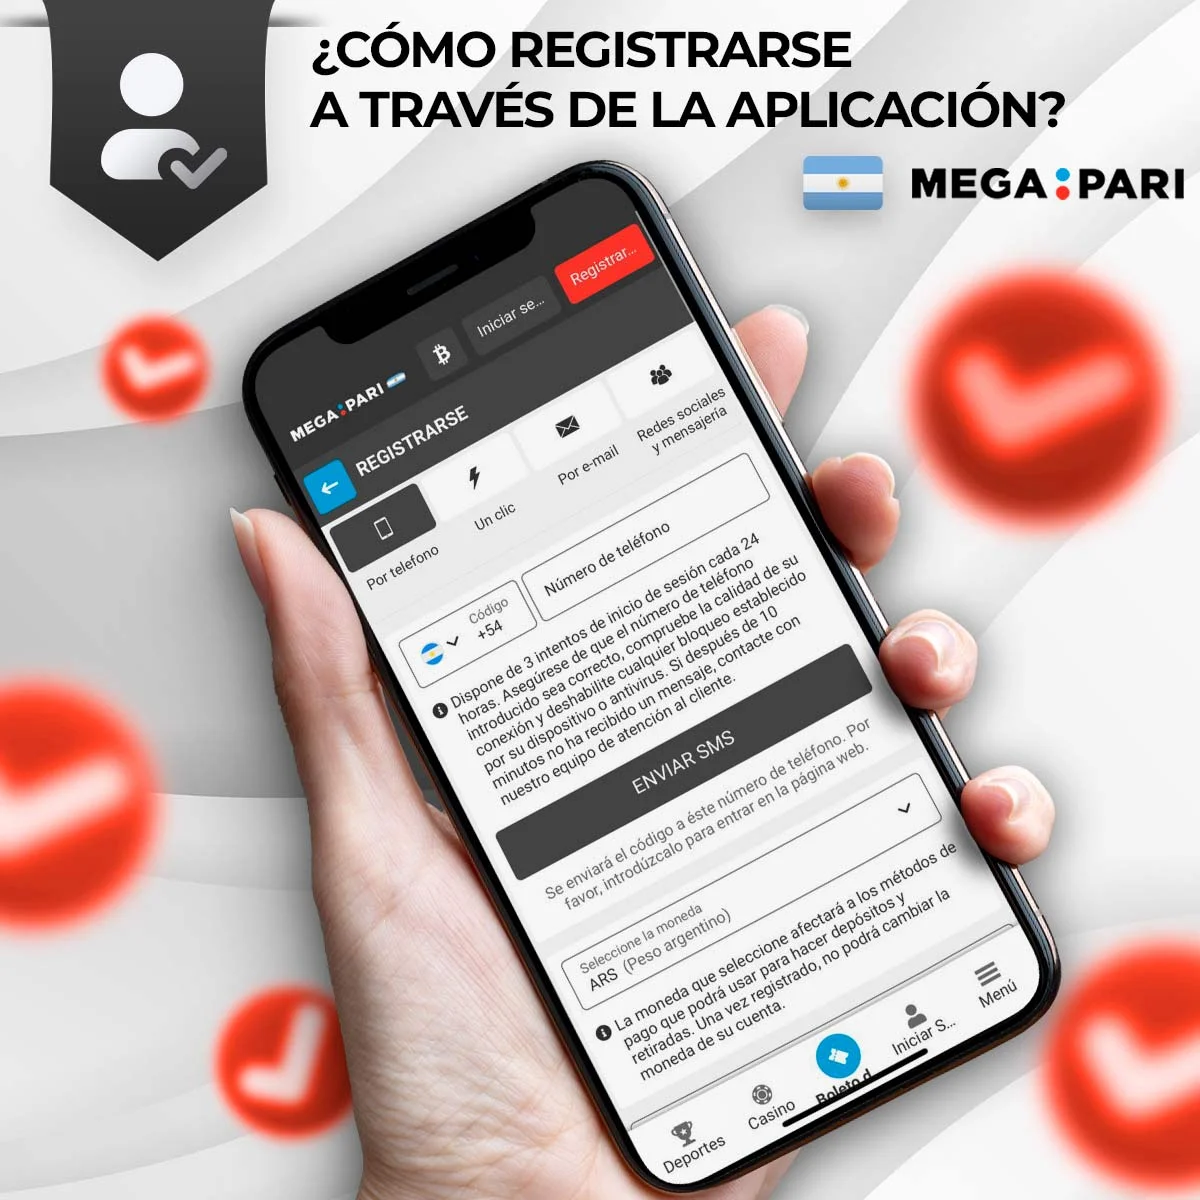 Proceso de registro de la aplicación móvil Megapari en Argentina